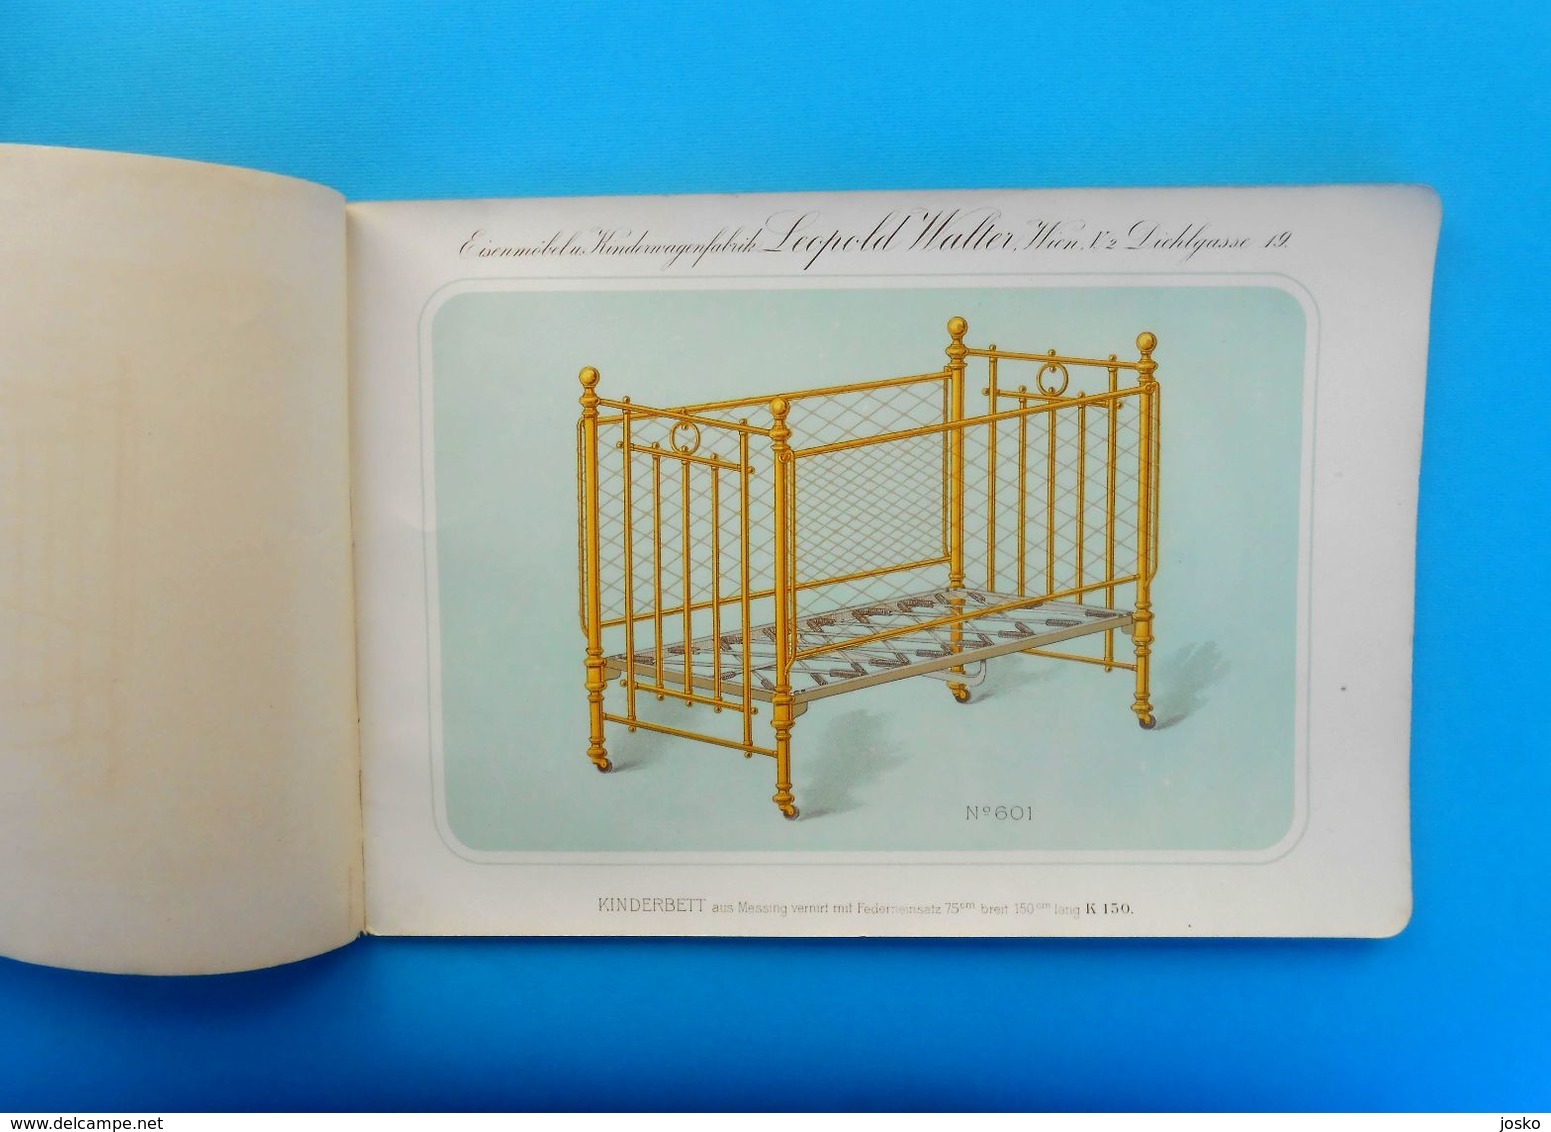 LEOPOLD WALTER (WIEN) MESSINGMOBEL FABRIK Austria Antique Catalog 1880s * Brass Furniture Osterreich Katalog Vienna RR - Kataloge